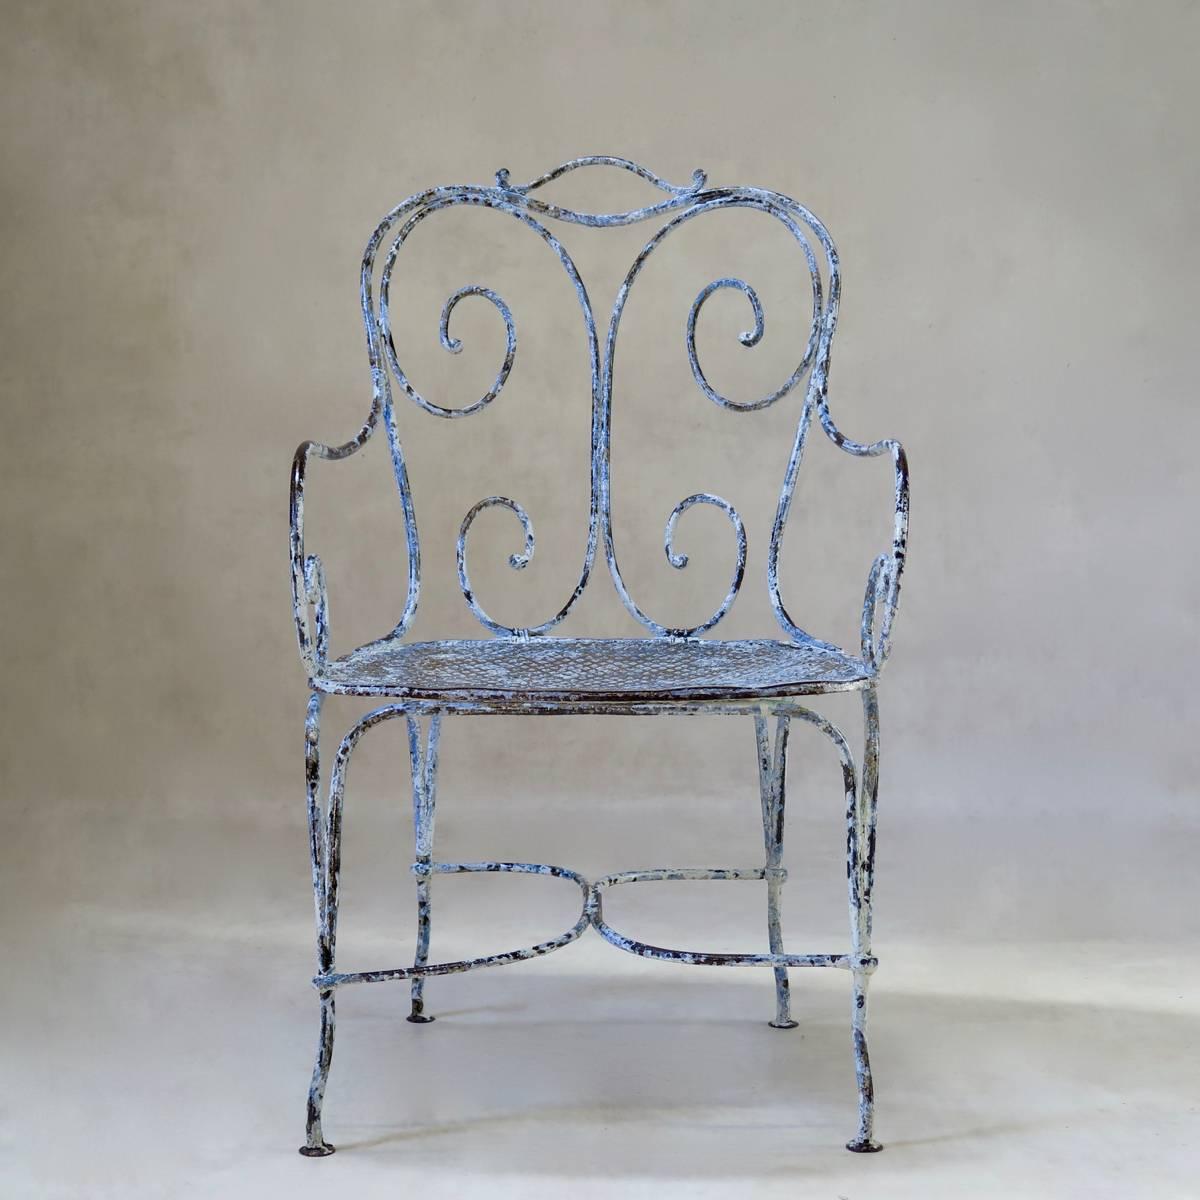 Sehr eleganter, ungewöhnlich breiter, lackierter schmiedeeiserner Gartenstuhl. Stabil, schwer und schön. Blaue und weiße Farbe sichtbar.